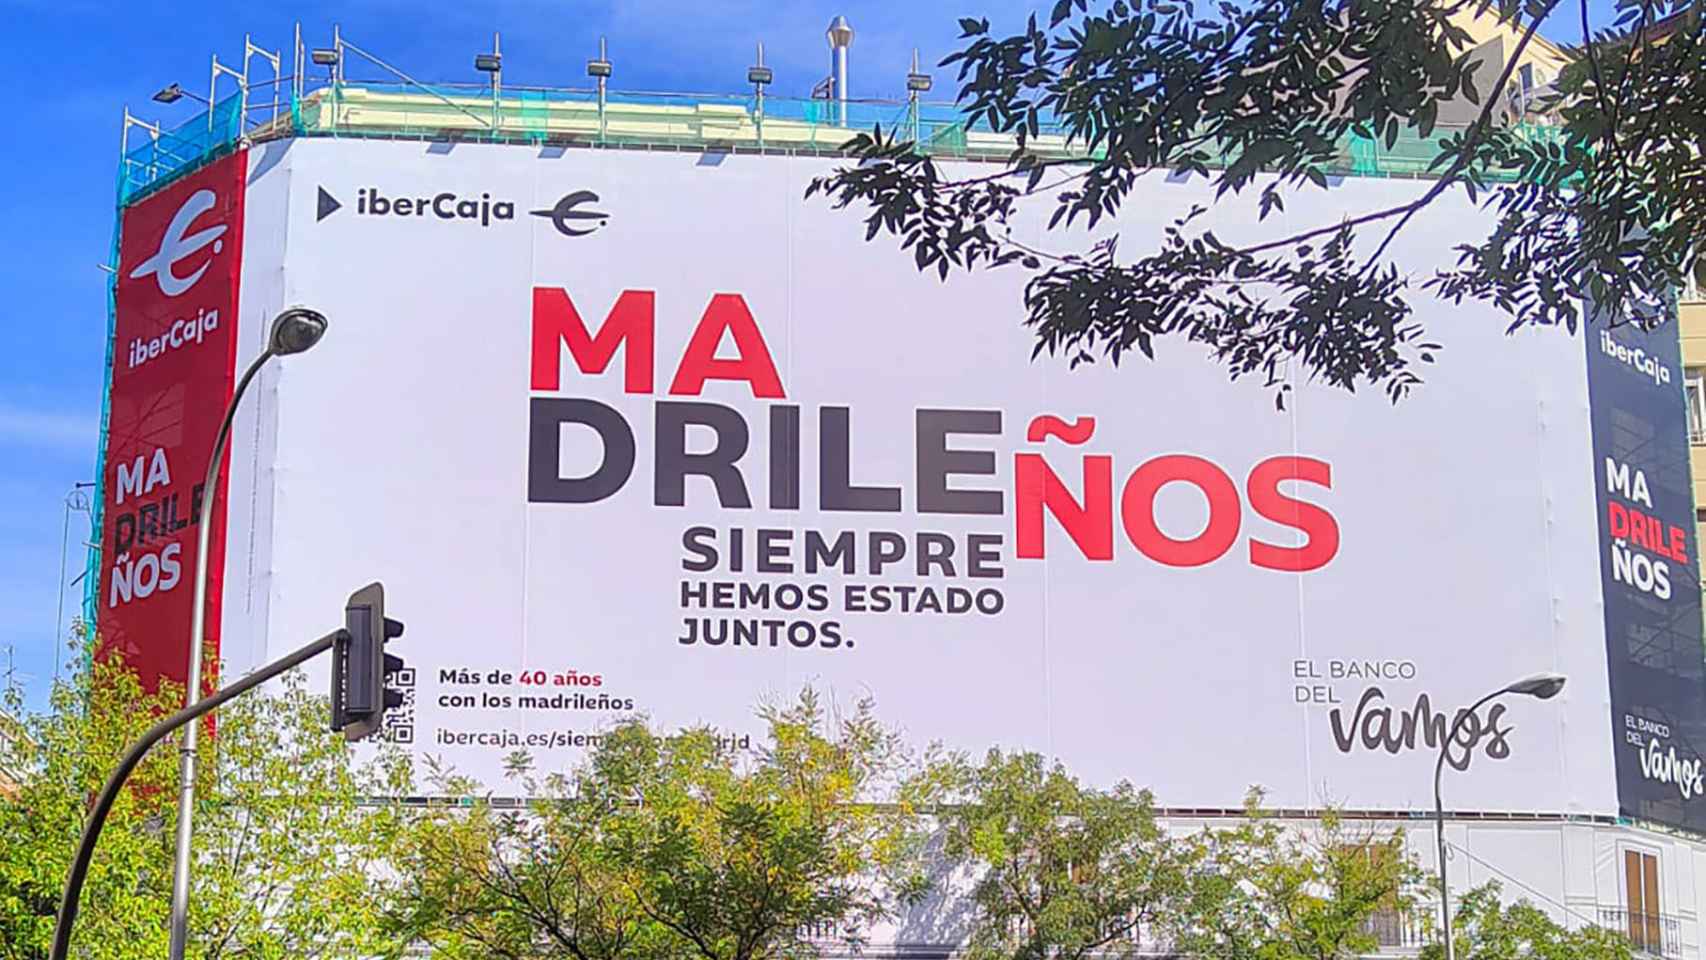 Campaña 'Madrileños' de Ibercaja.